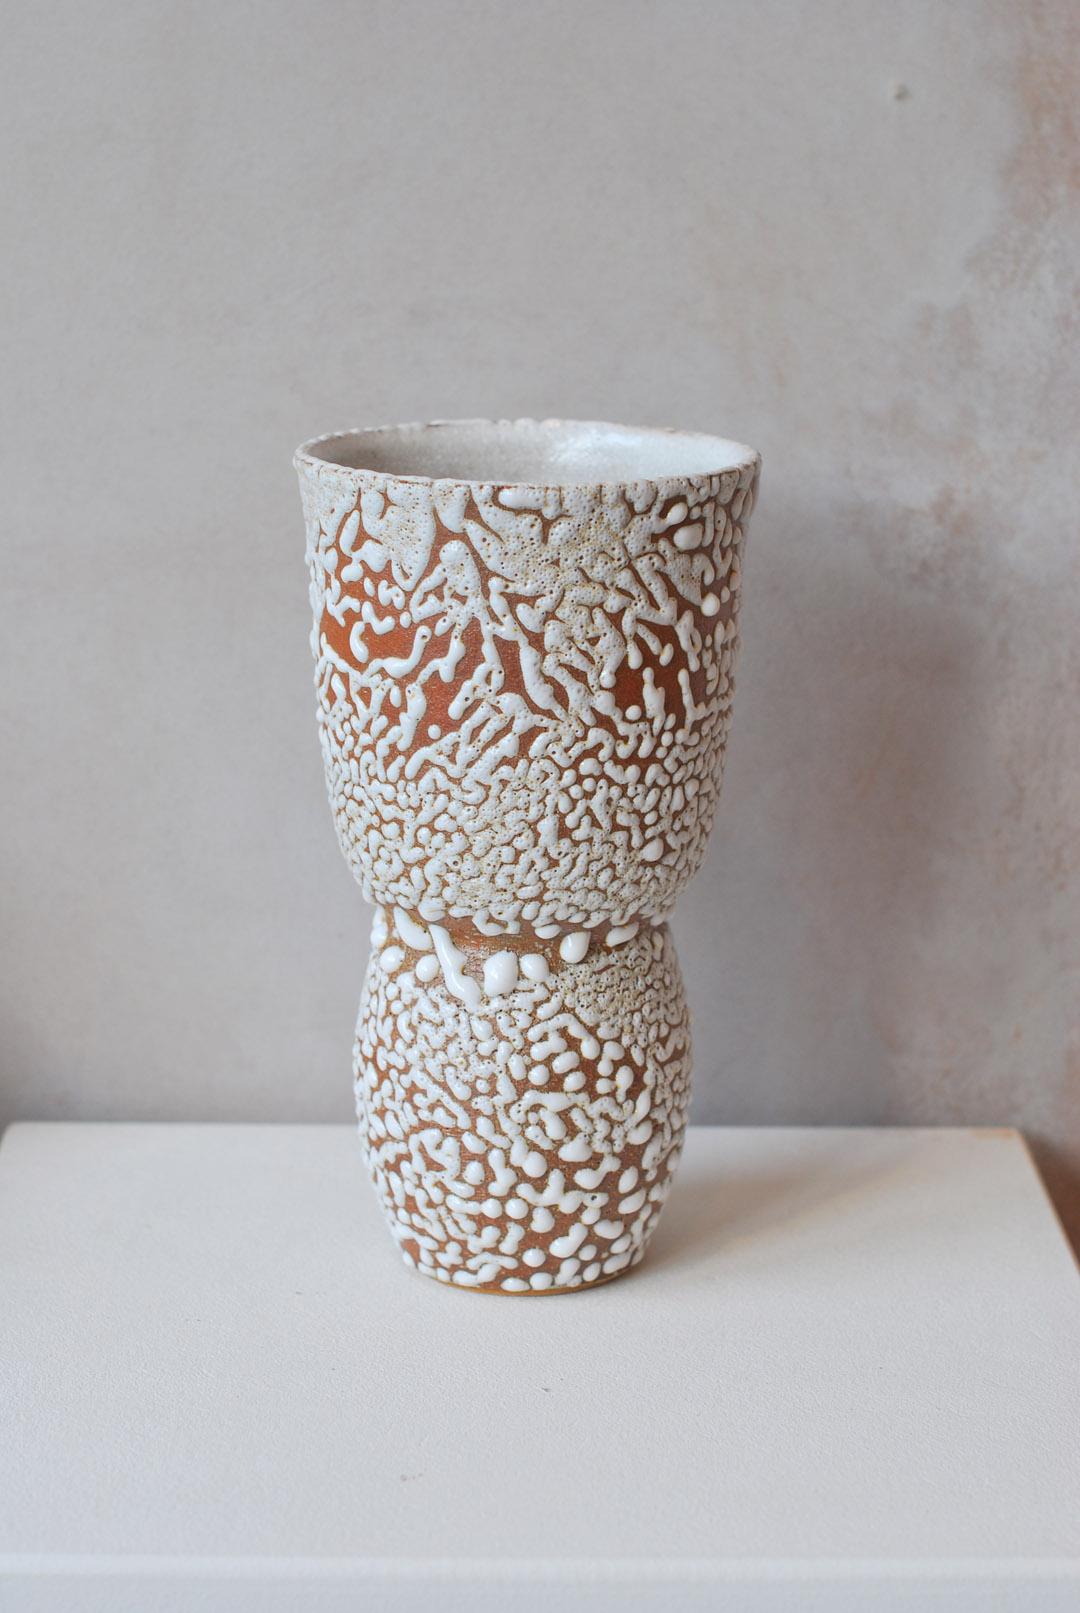 C-019 Weiße Vase aus Steingut von Moïo Studio
Abmessungen: T12 x B12 x H21 cm
MATERIALIEN: Weiße Kriechglasur auf hellbraunem Steingut
Von Hand auf dem Rad gefertigt
Einzigartiges Stück, fragen Sie nach Mehrlingen

ist das in Berlin ansässige Studio